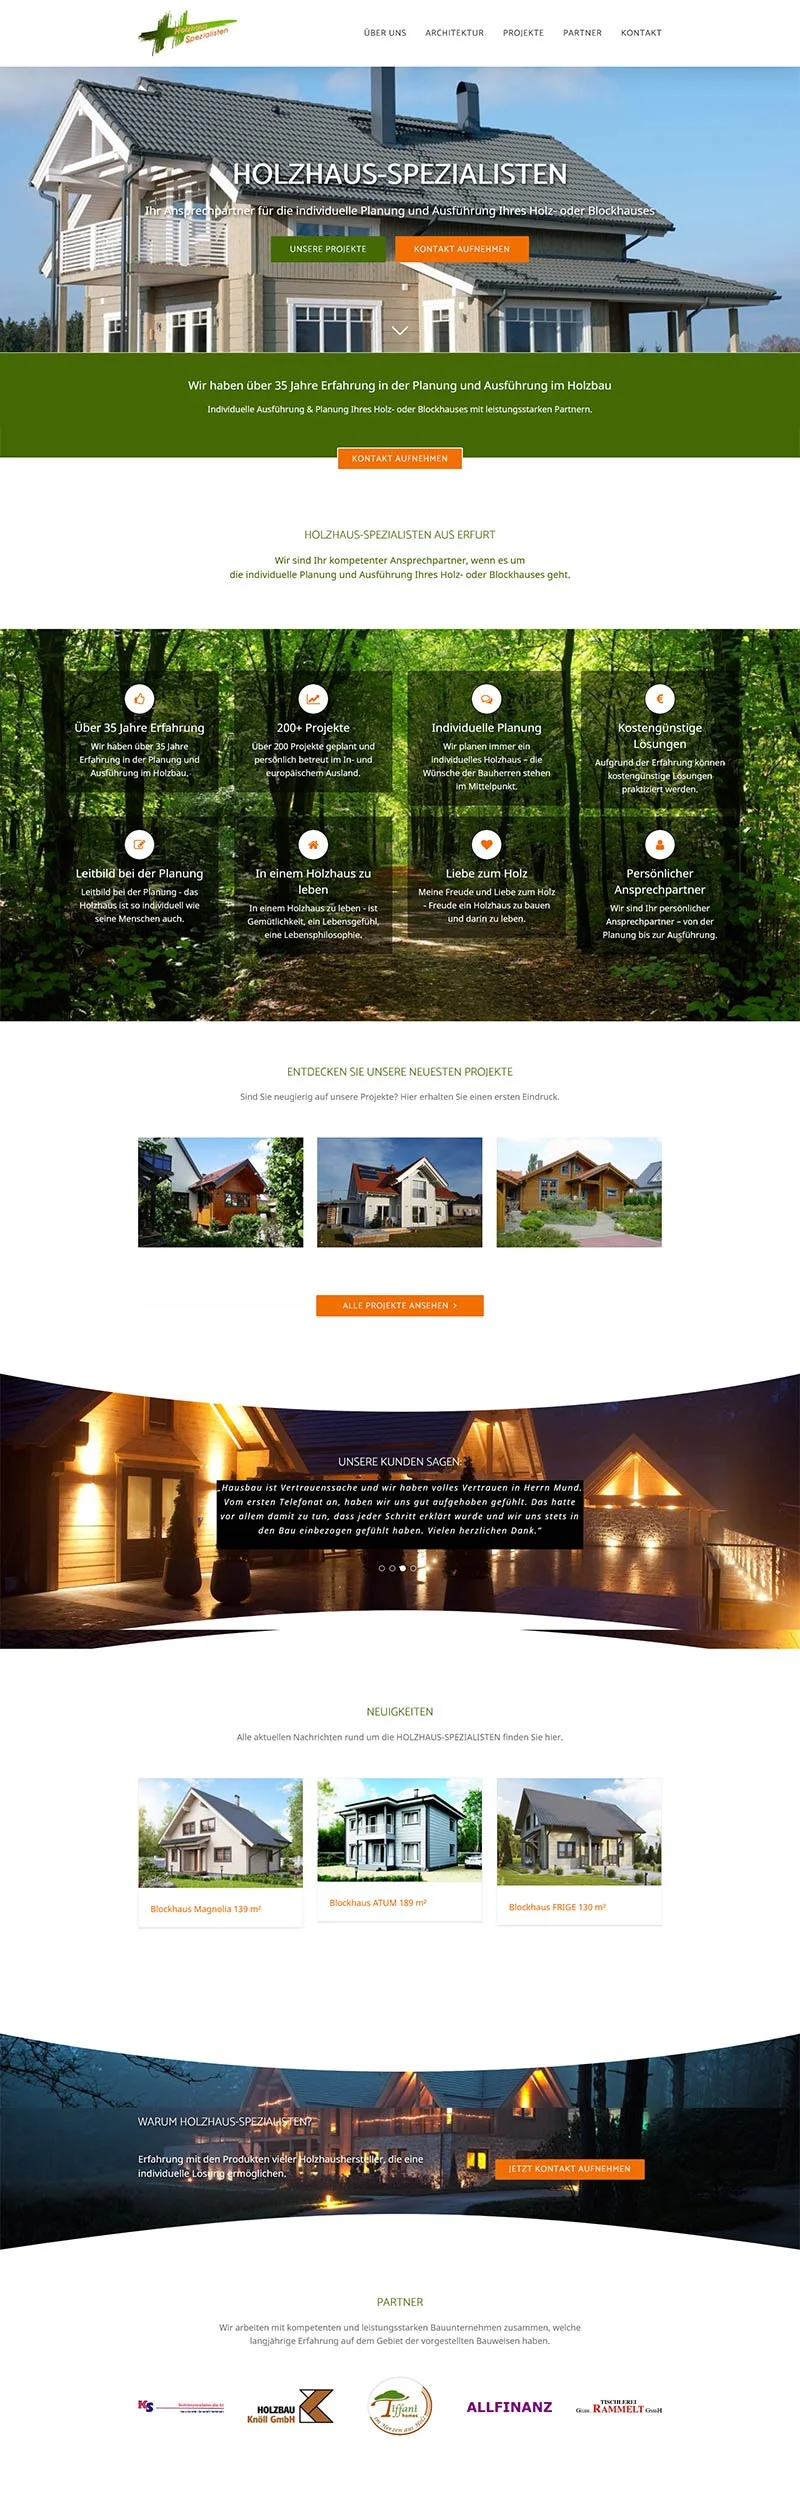 Die Holzhaus-Spezialisten - Screenshot Fullsize Startseite